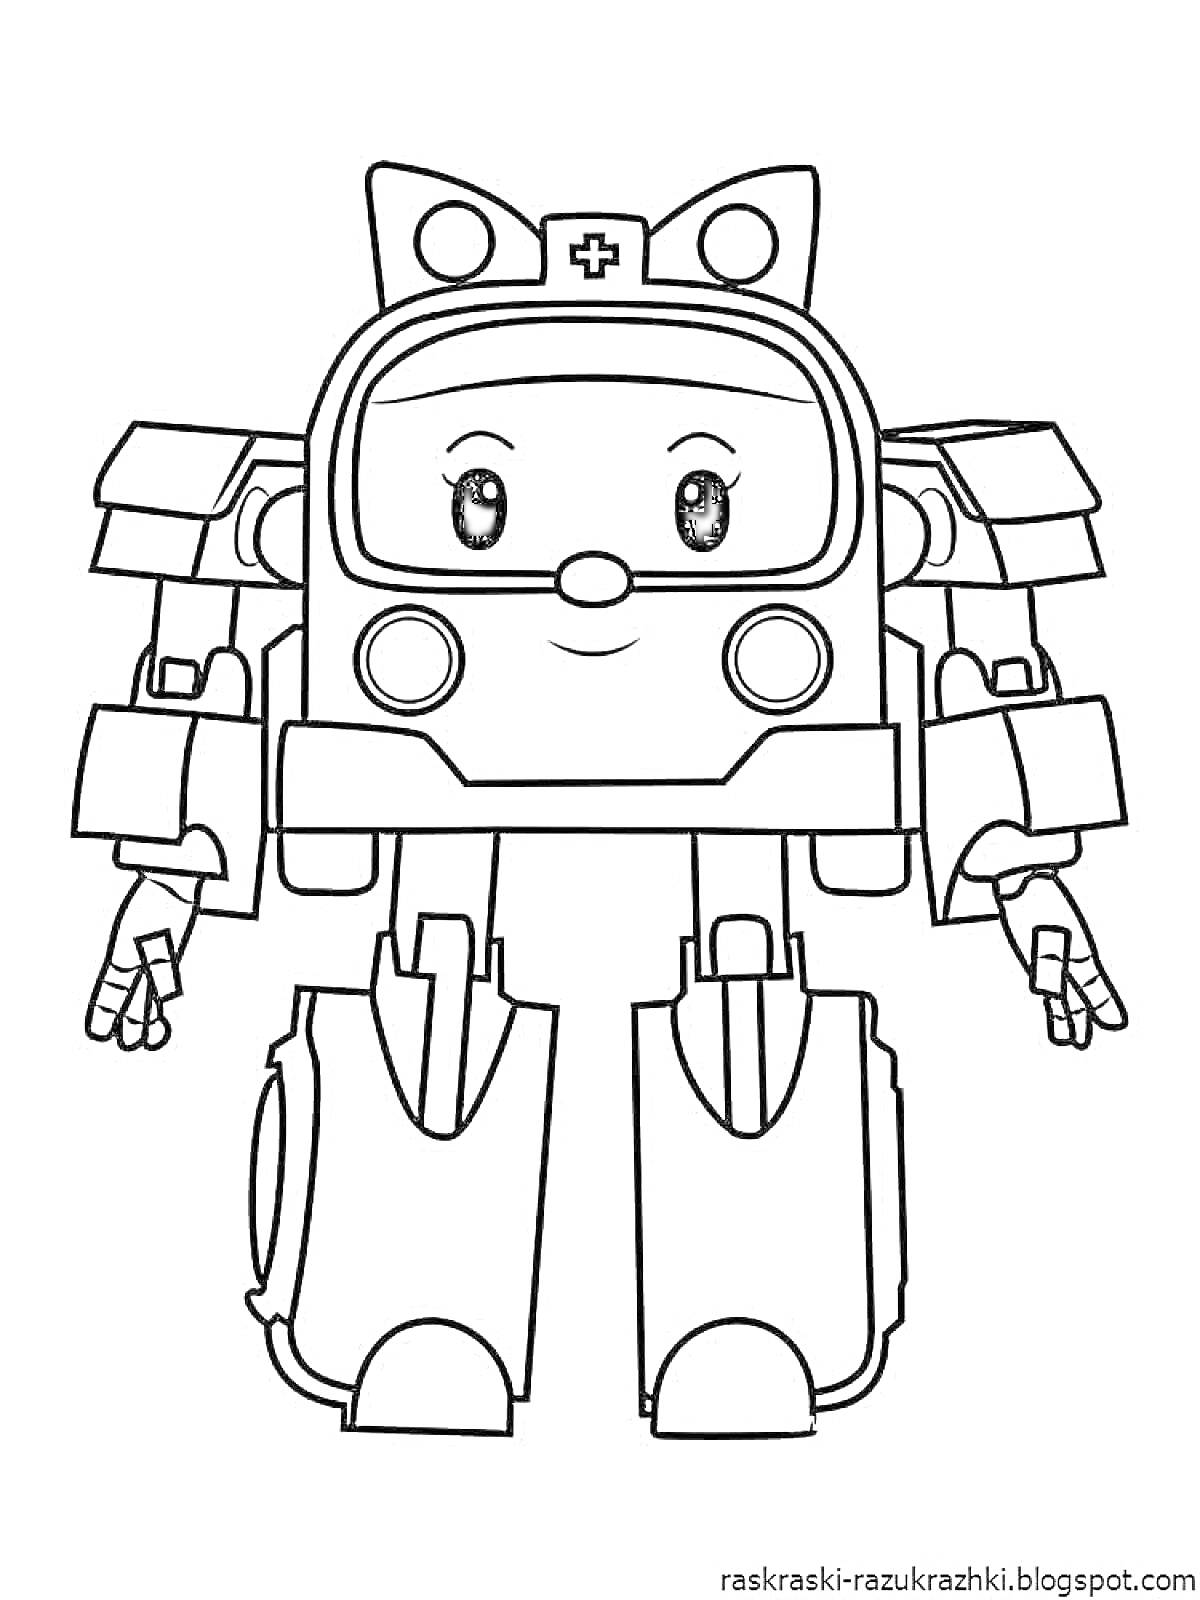 Раскраска Робот-машина с милым лицом и ушками, эмблемой с крестом на лбу, с большими ногами и руками с пальцами